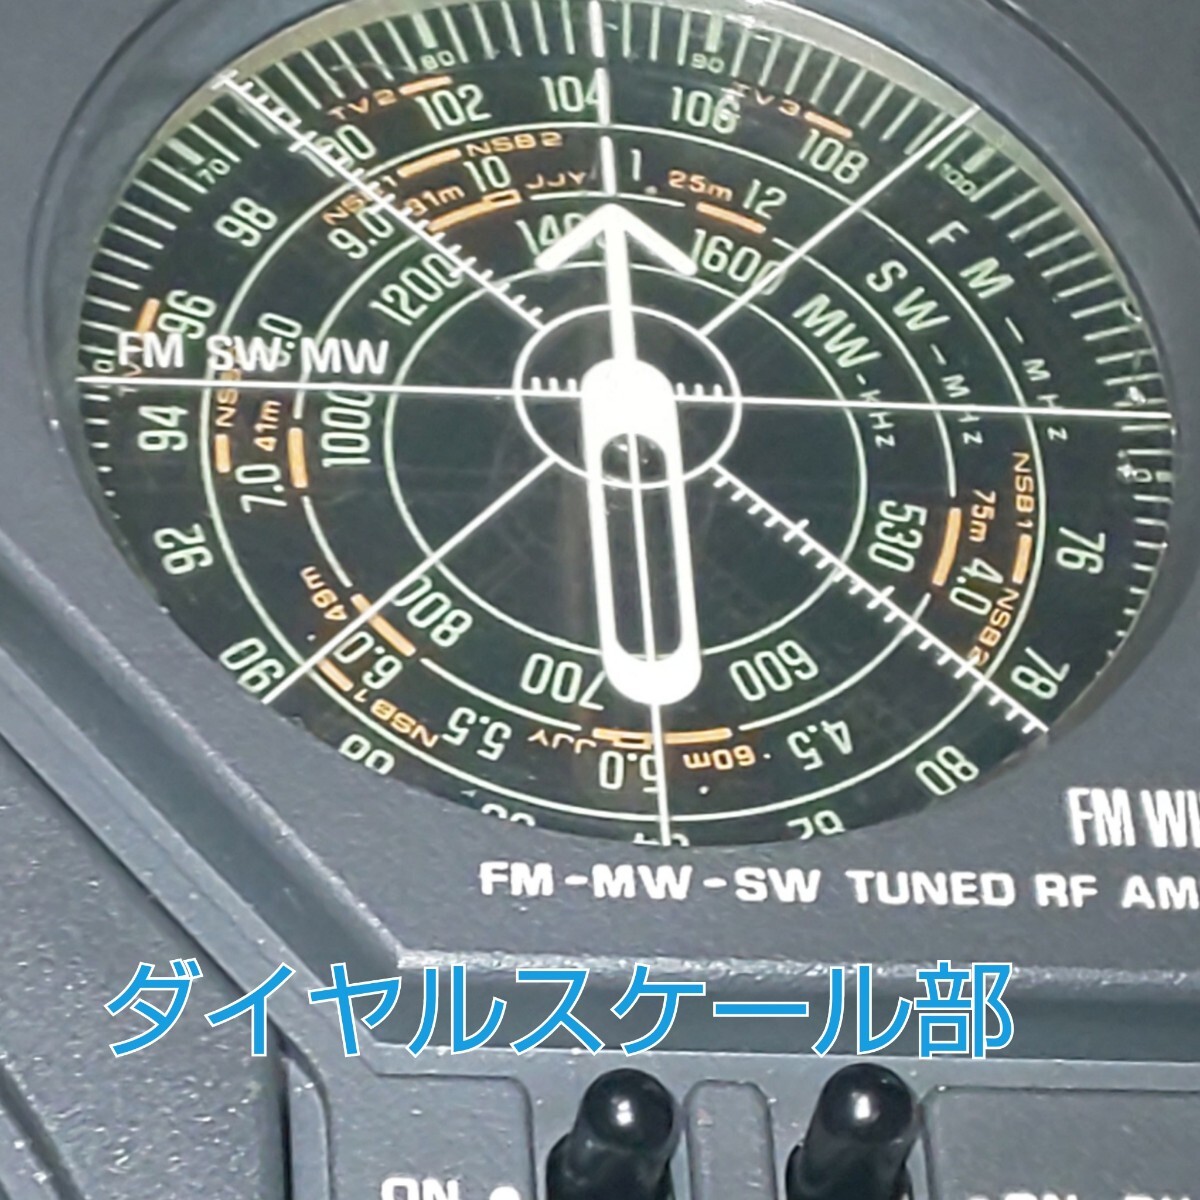 A* обслуживание рабочий товар * Showa рождение. именная техника National Kuga RF-877 широкий FM полный покрытие память свет BT ресивер приложен, мобильный аккумулятор соответствует 